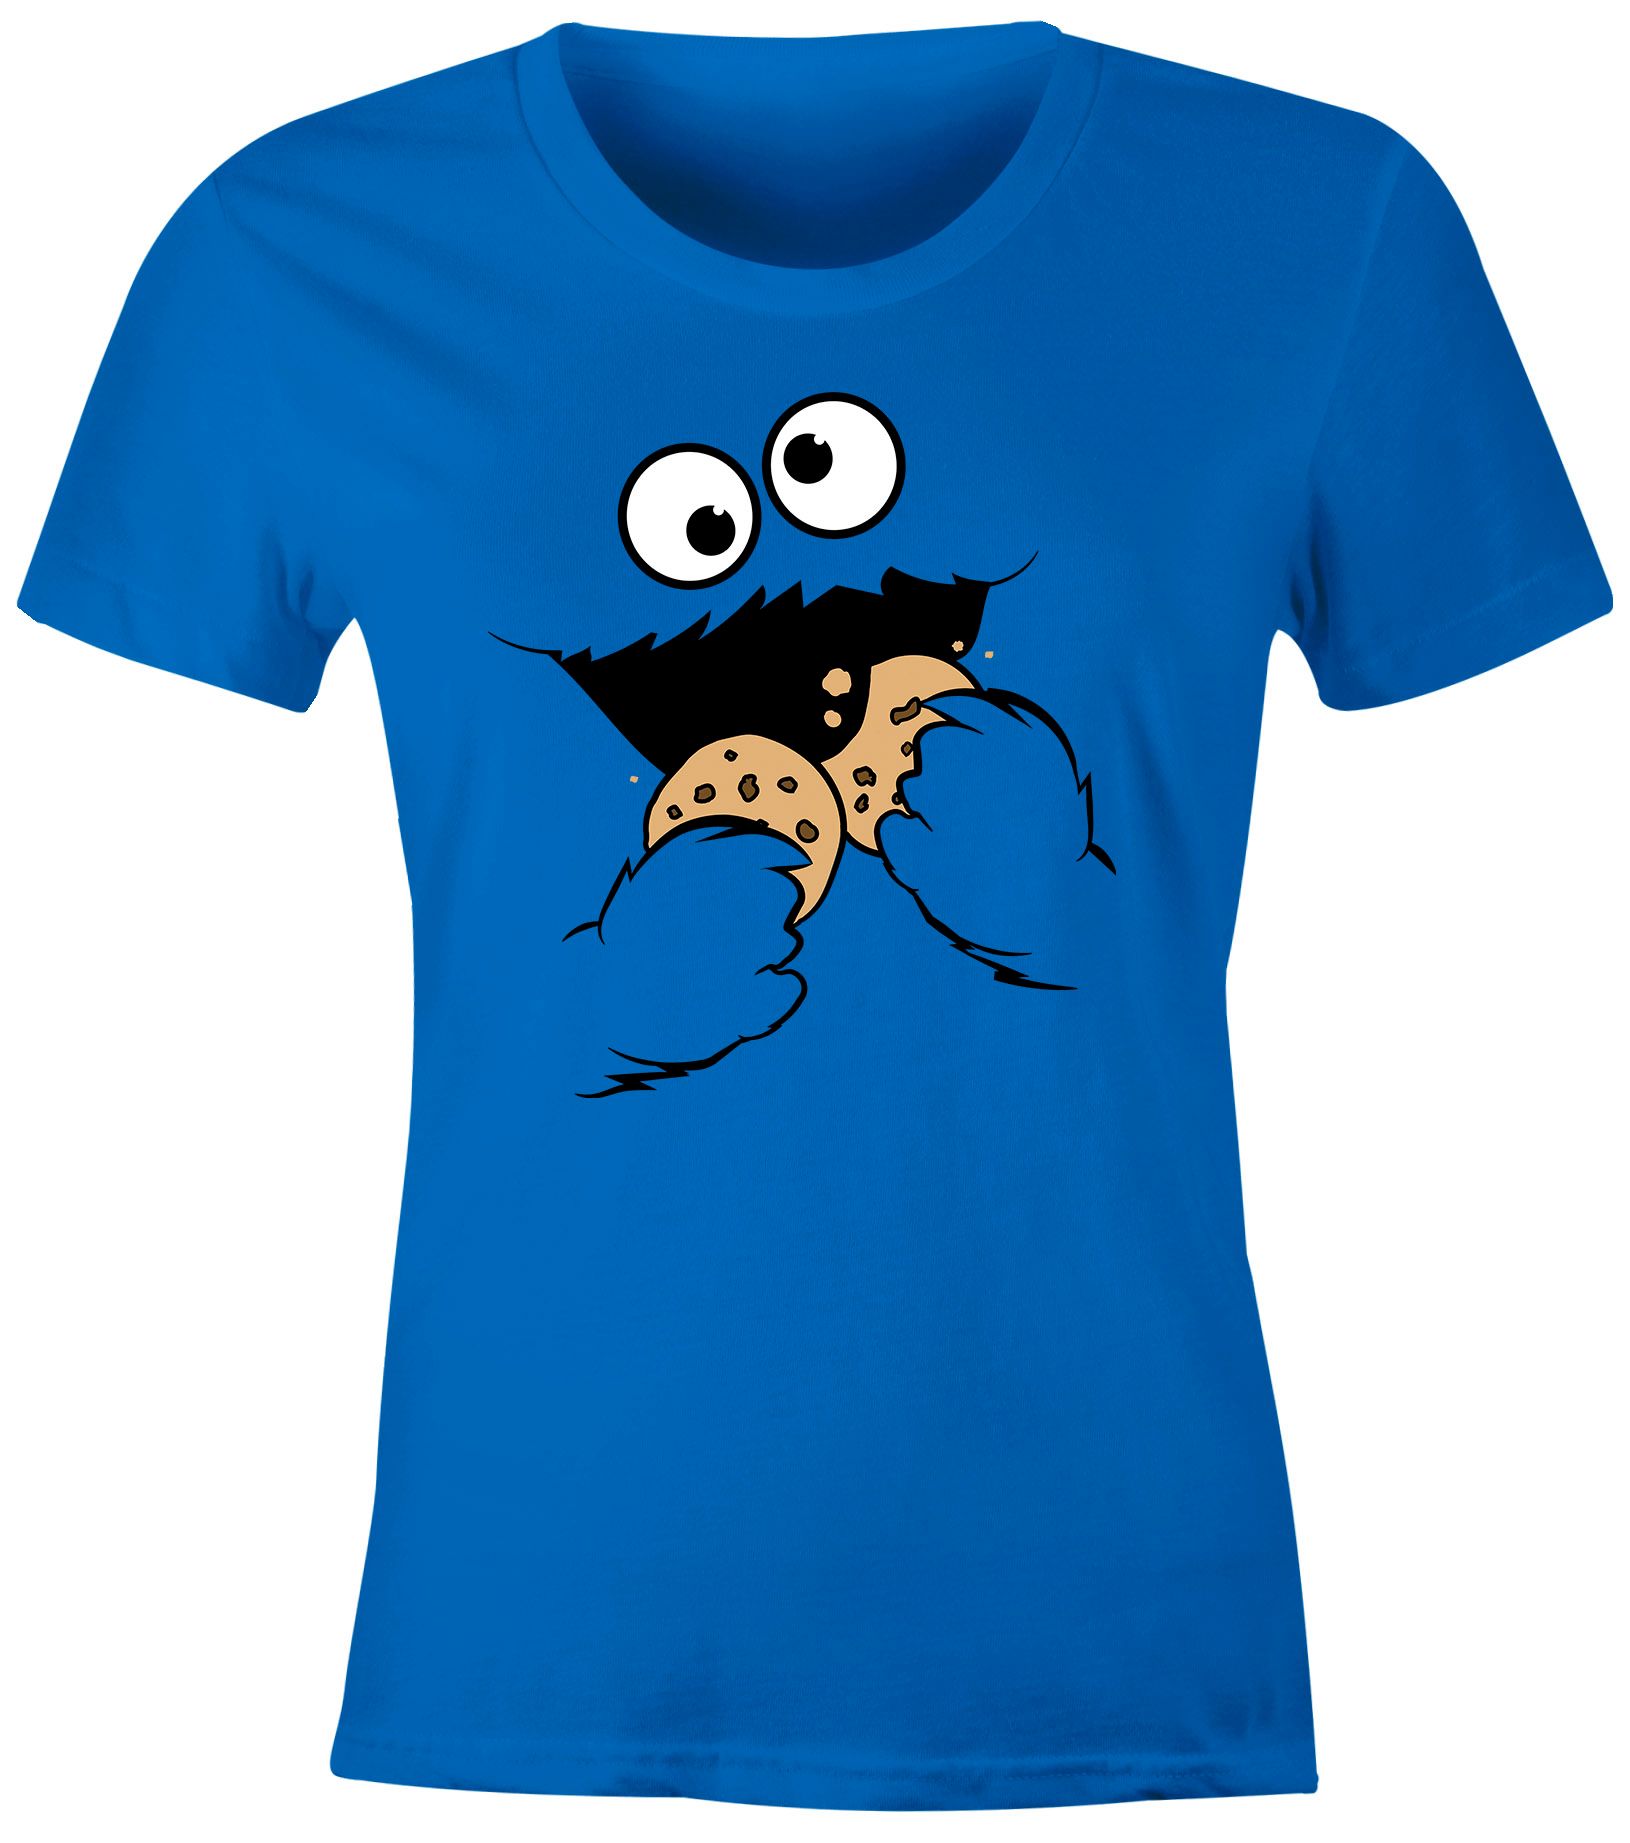 Damen T-Shirt Krümelmonster Keks Cookie Monster Fasching Karneval Kostüm Slim Fit Moonworks®